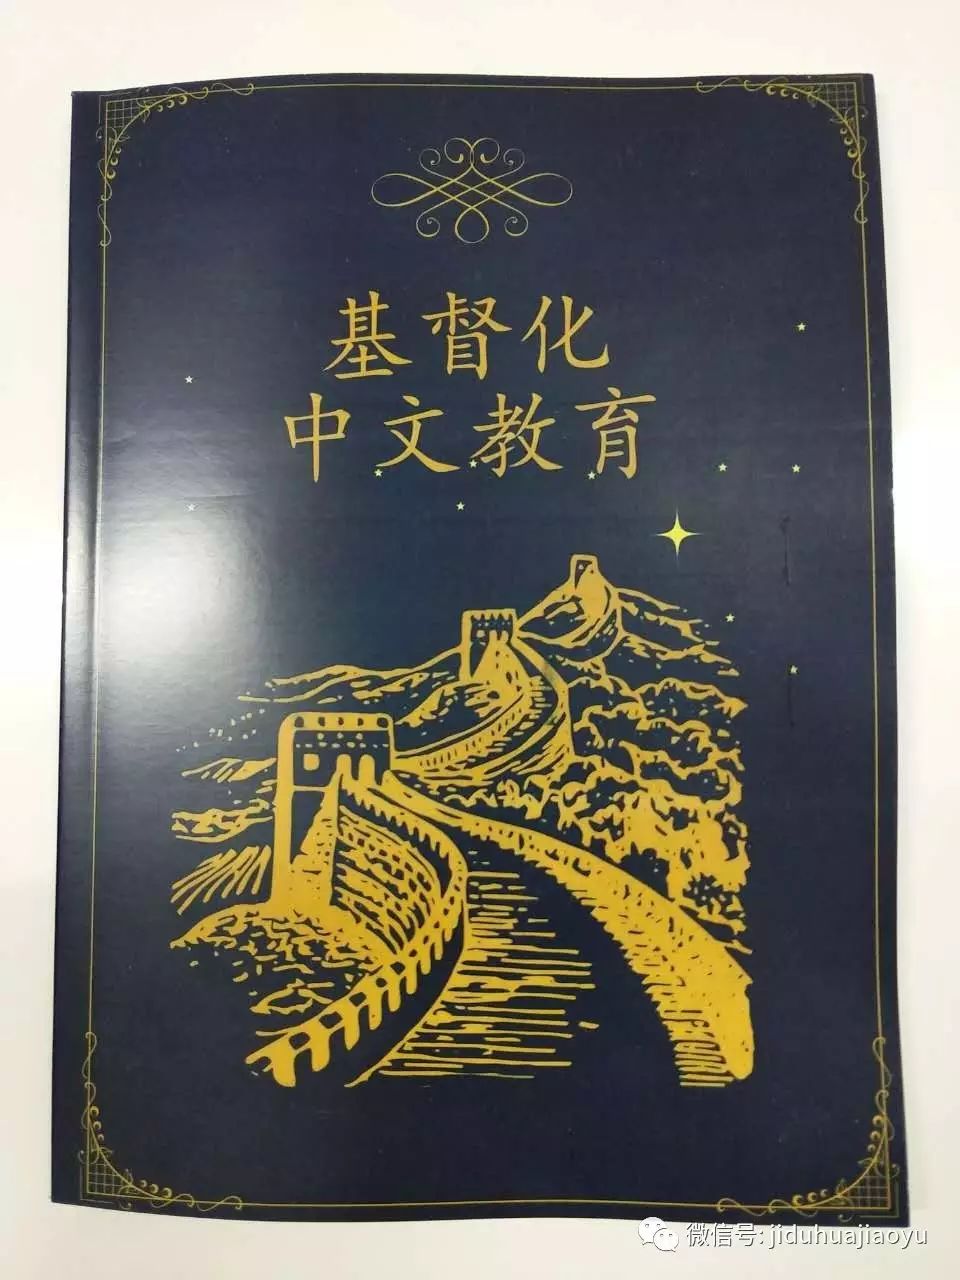 《基督化中文教育》一书介绍